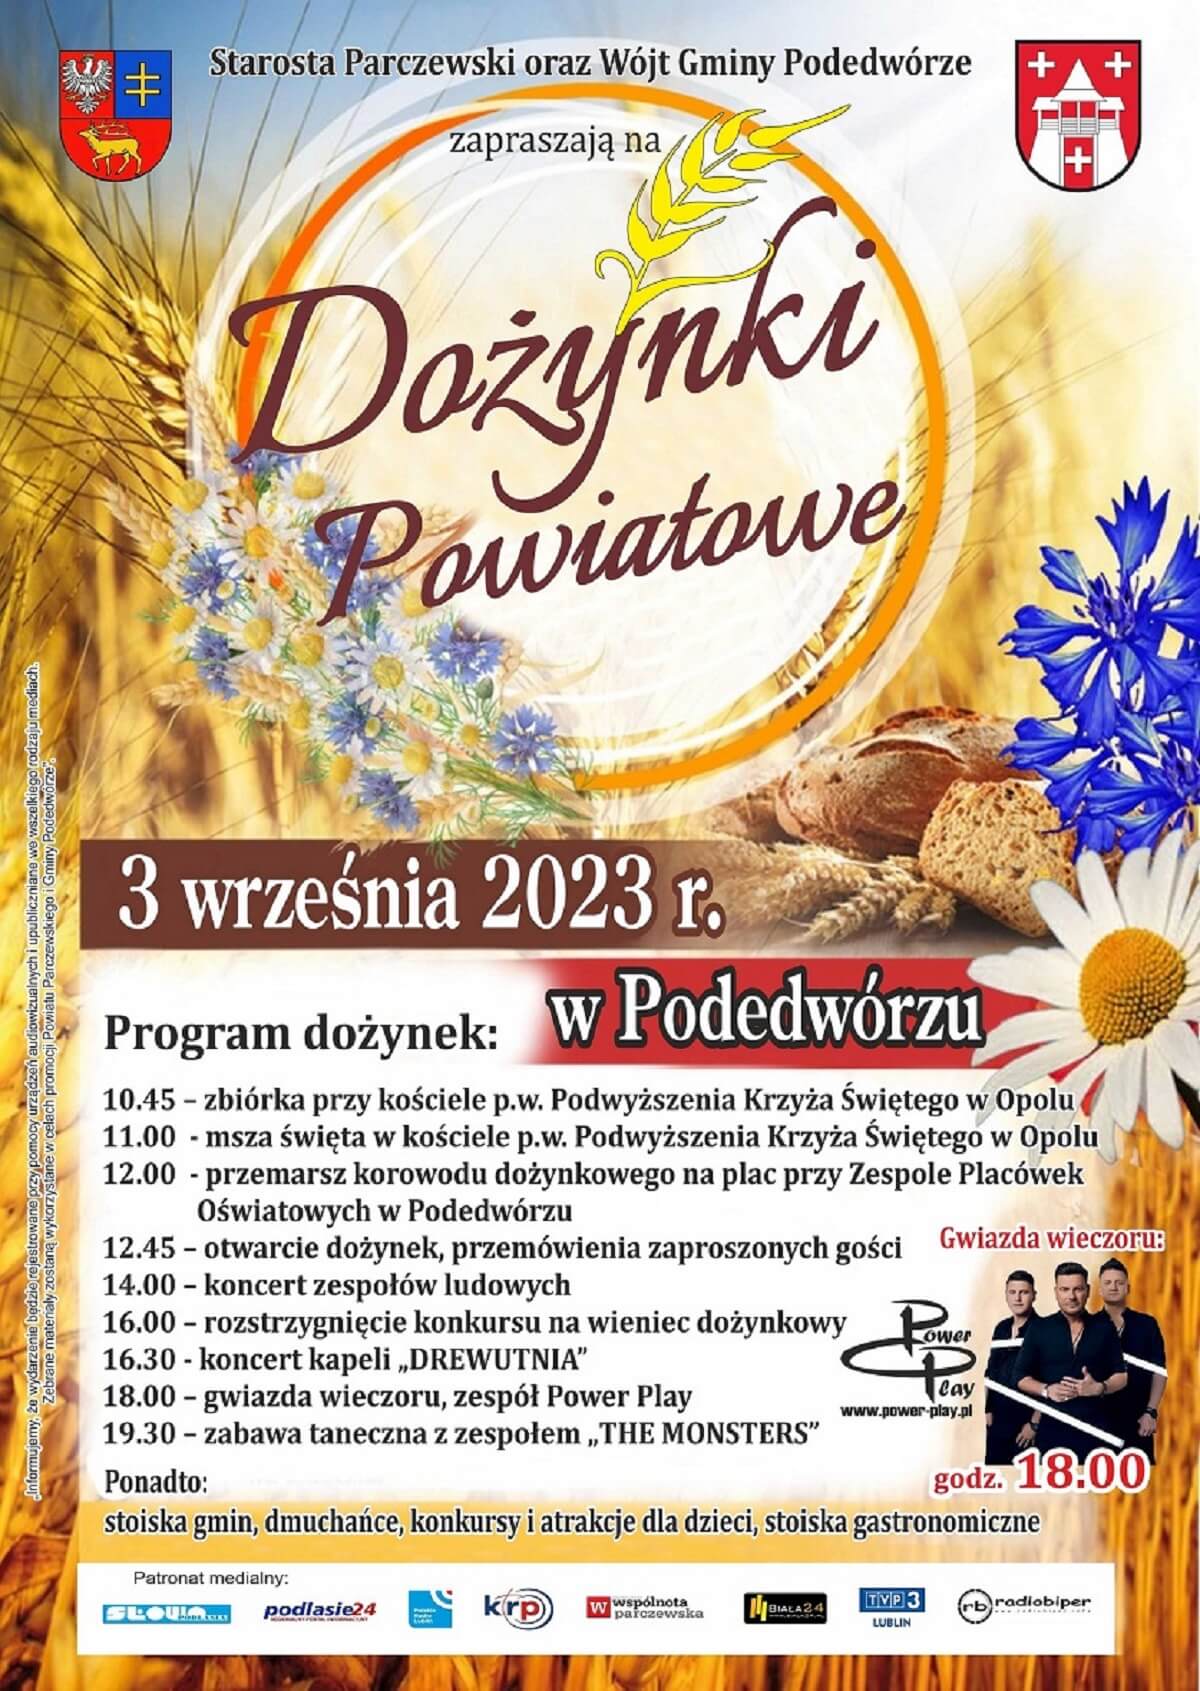 Dożynki powiatu parczewskiego w Podedwórzu 2023 - plakat, program wydarzenia